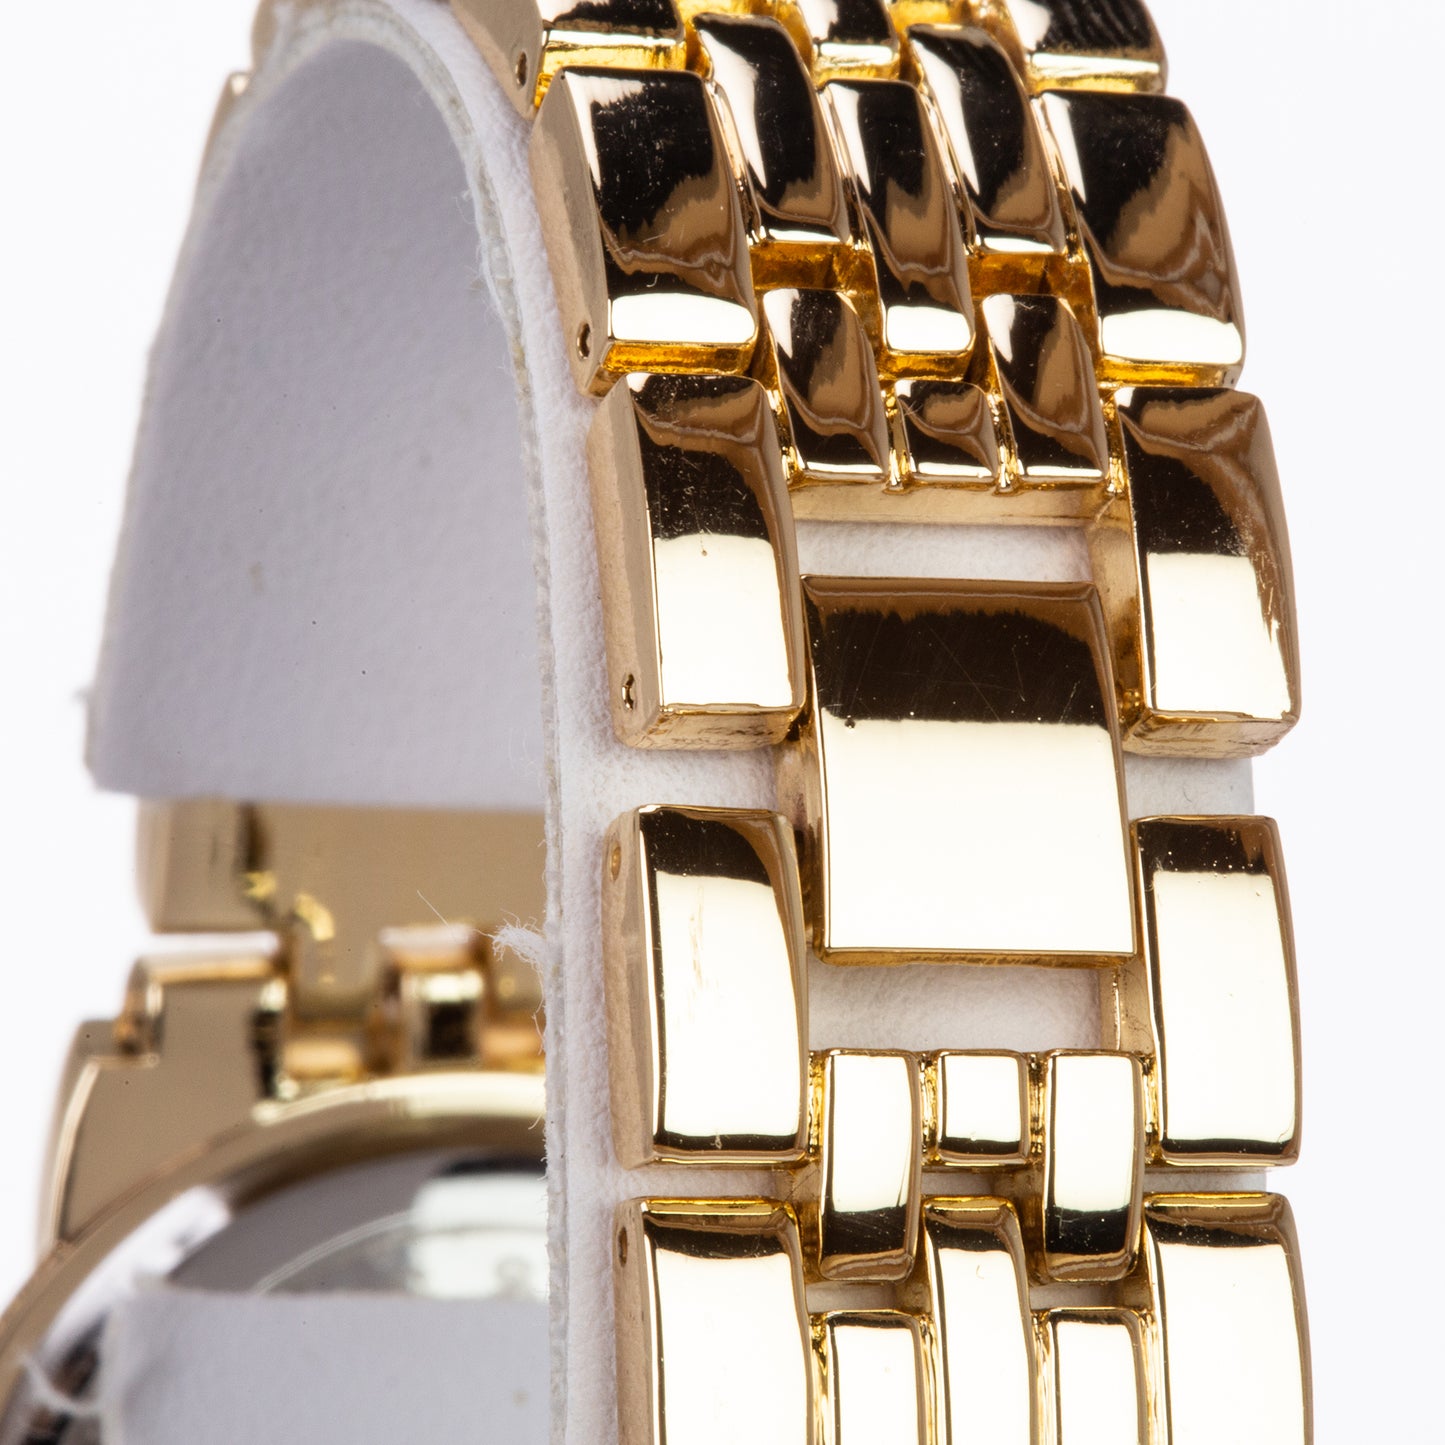 Set Whit Emporia Crystal en oro plateado ( reloj de pulsera + 2 pulseras )